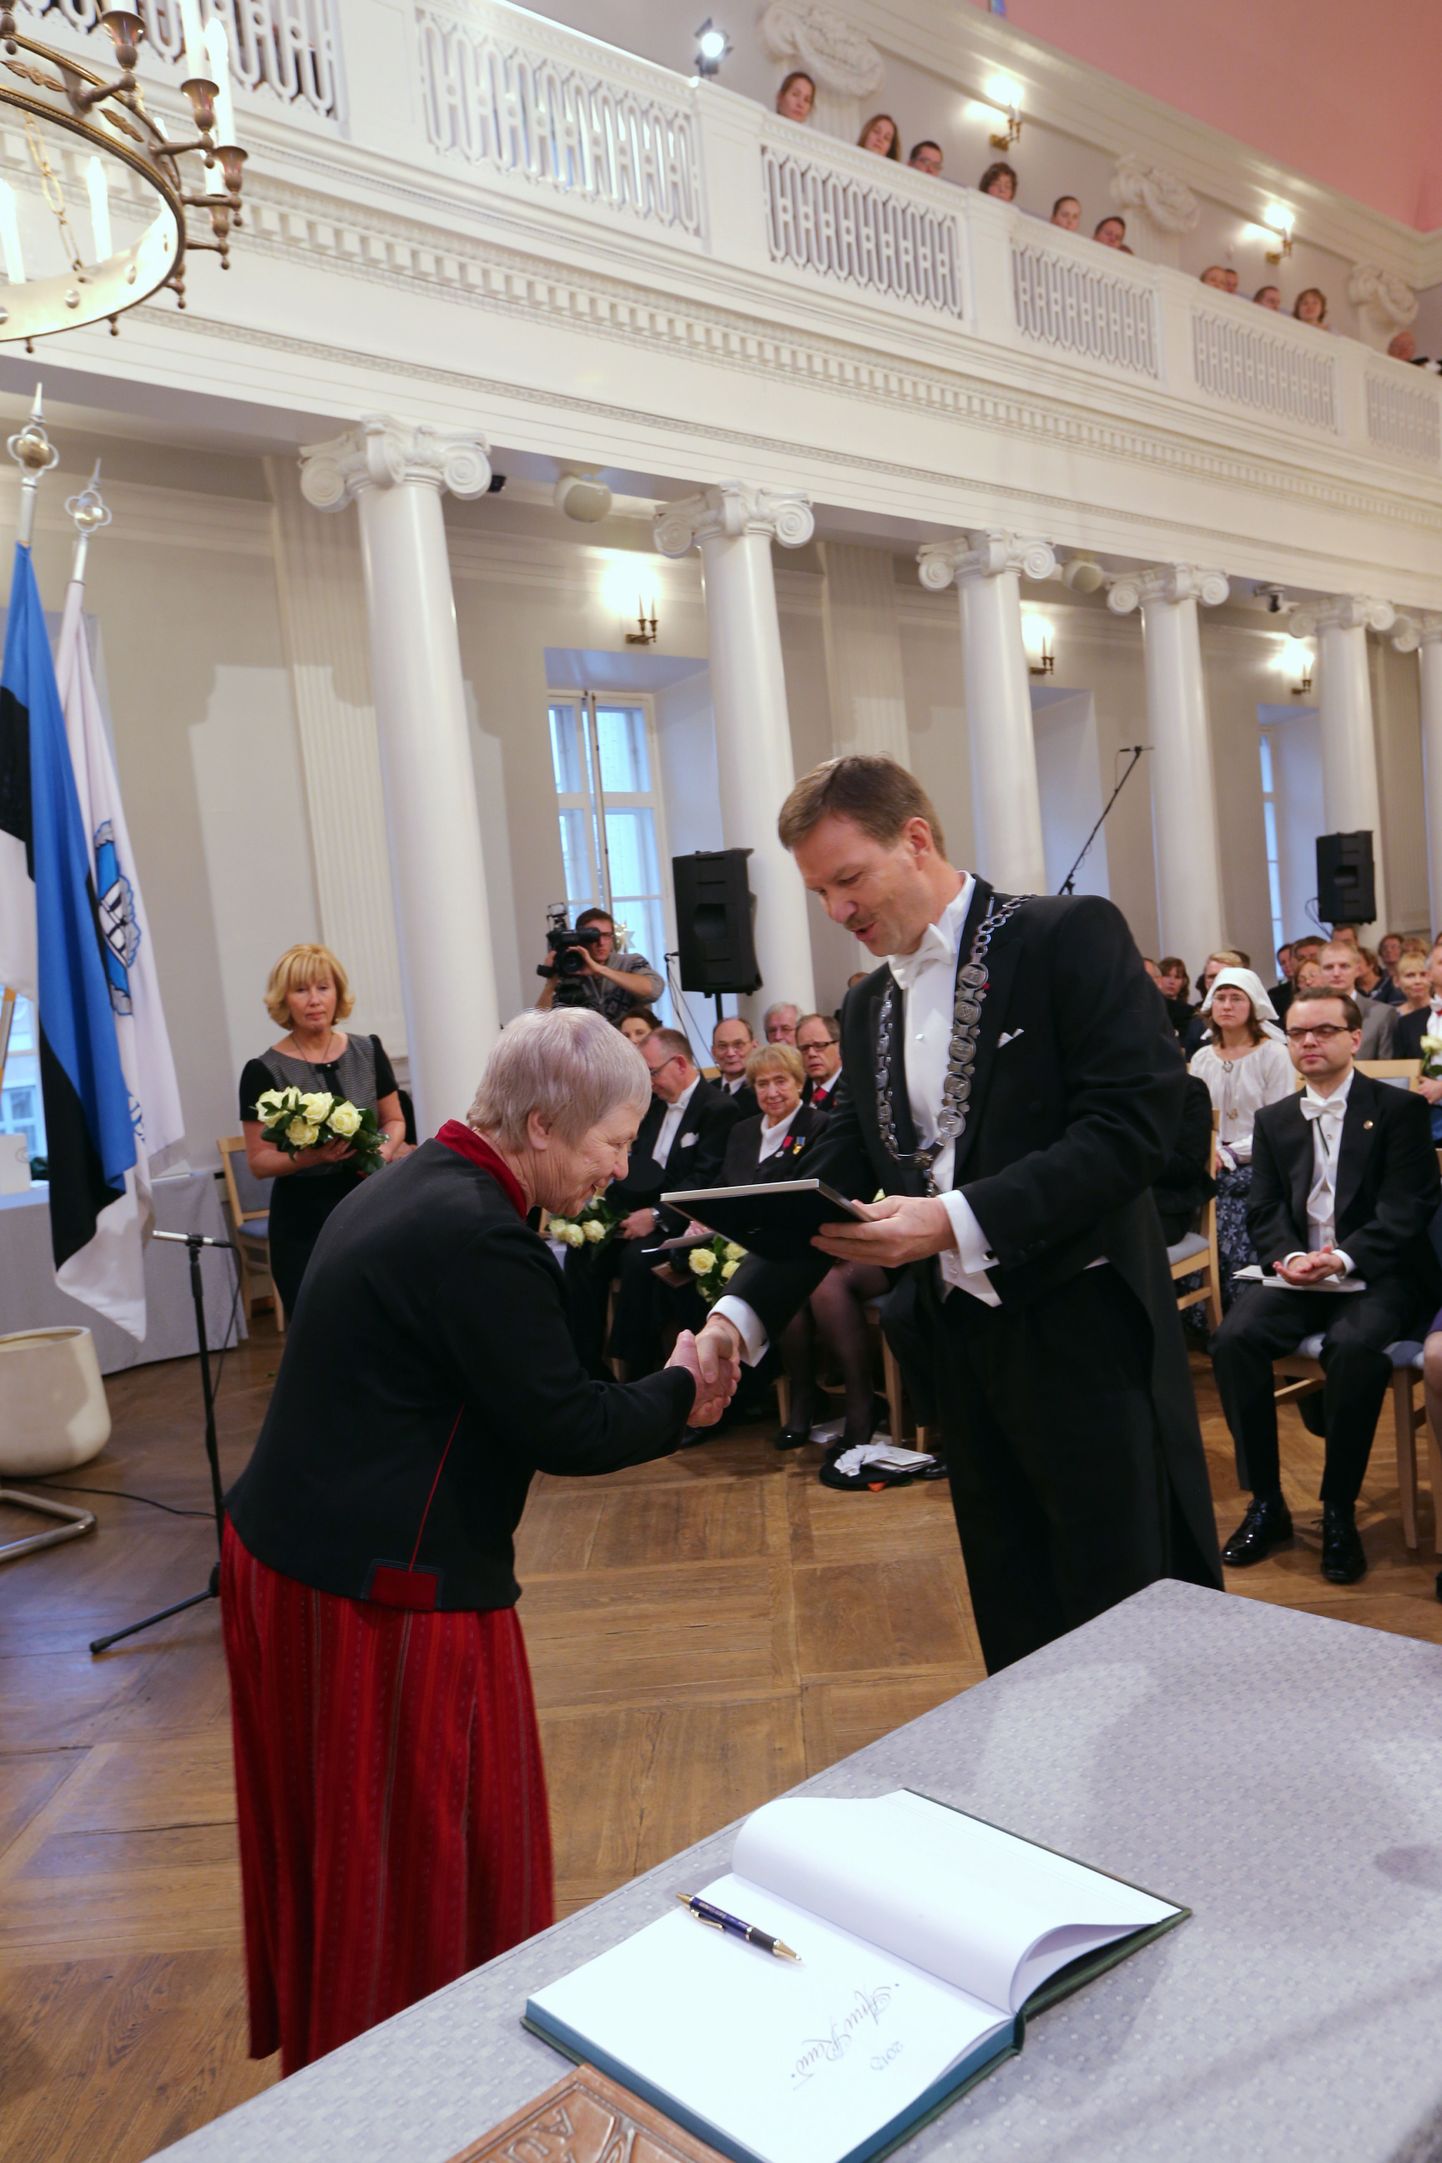 Rahvusülikooli 94. aastapäeva aktus. Tartu Ülikooli Rahvusmõtte auhinna üleandmine.
Pildil auhinna saaja Anu Raud ja TÜ rektor Volli Kalm.